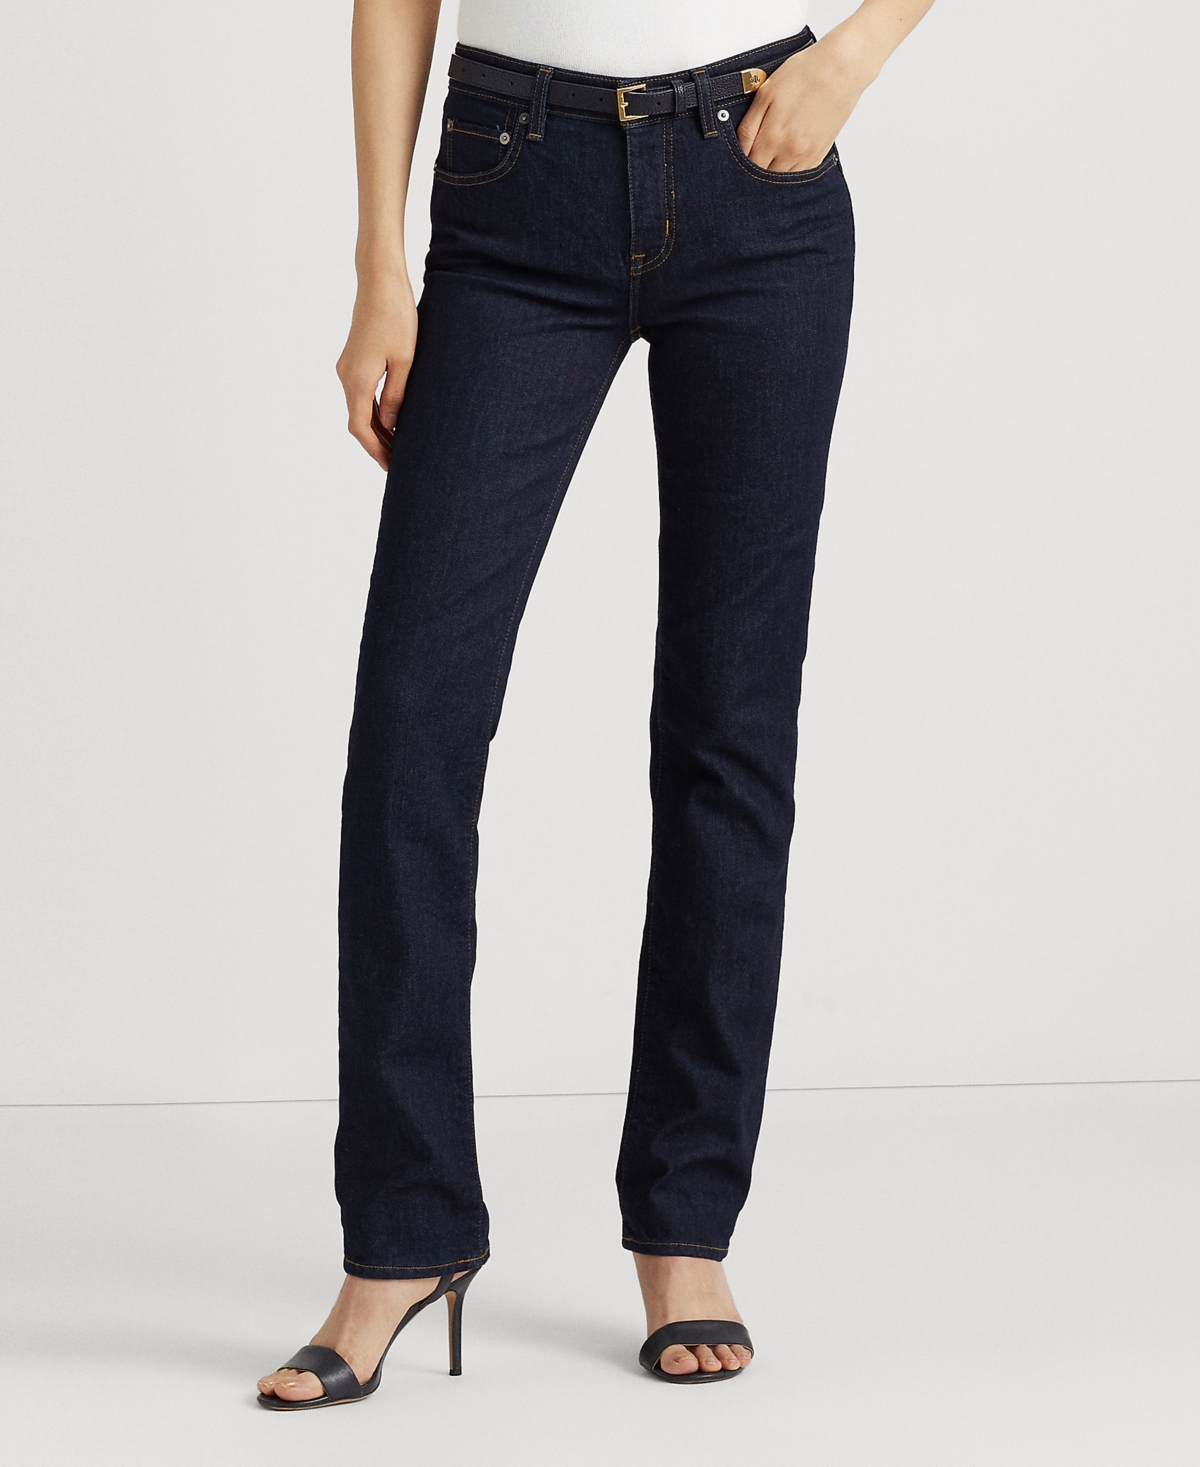 Lauren Ralph Lauren Super Stretch Premier Straight Jeans, Regular And Short Lengths In Dark Rinse Wash